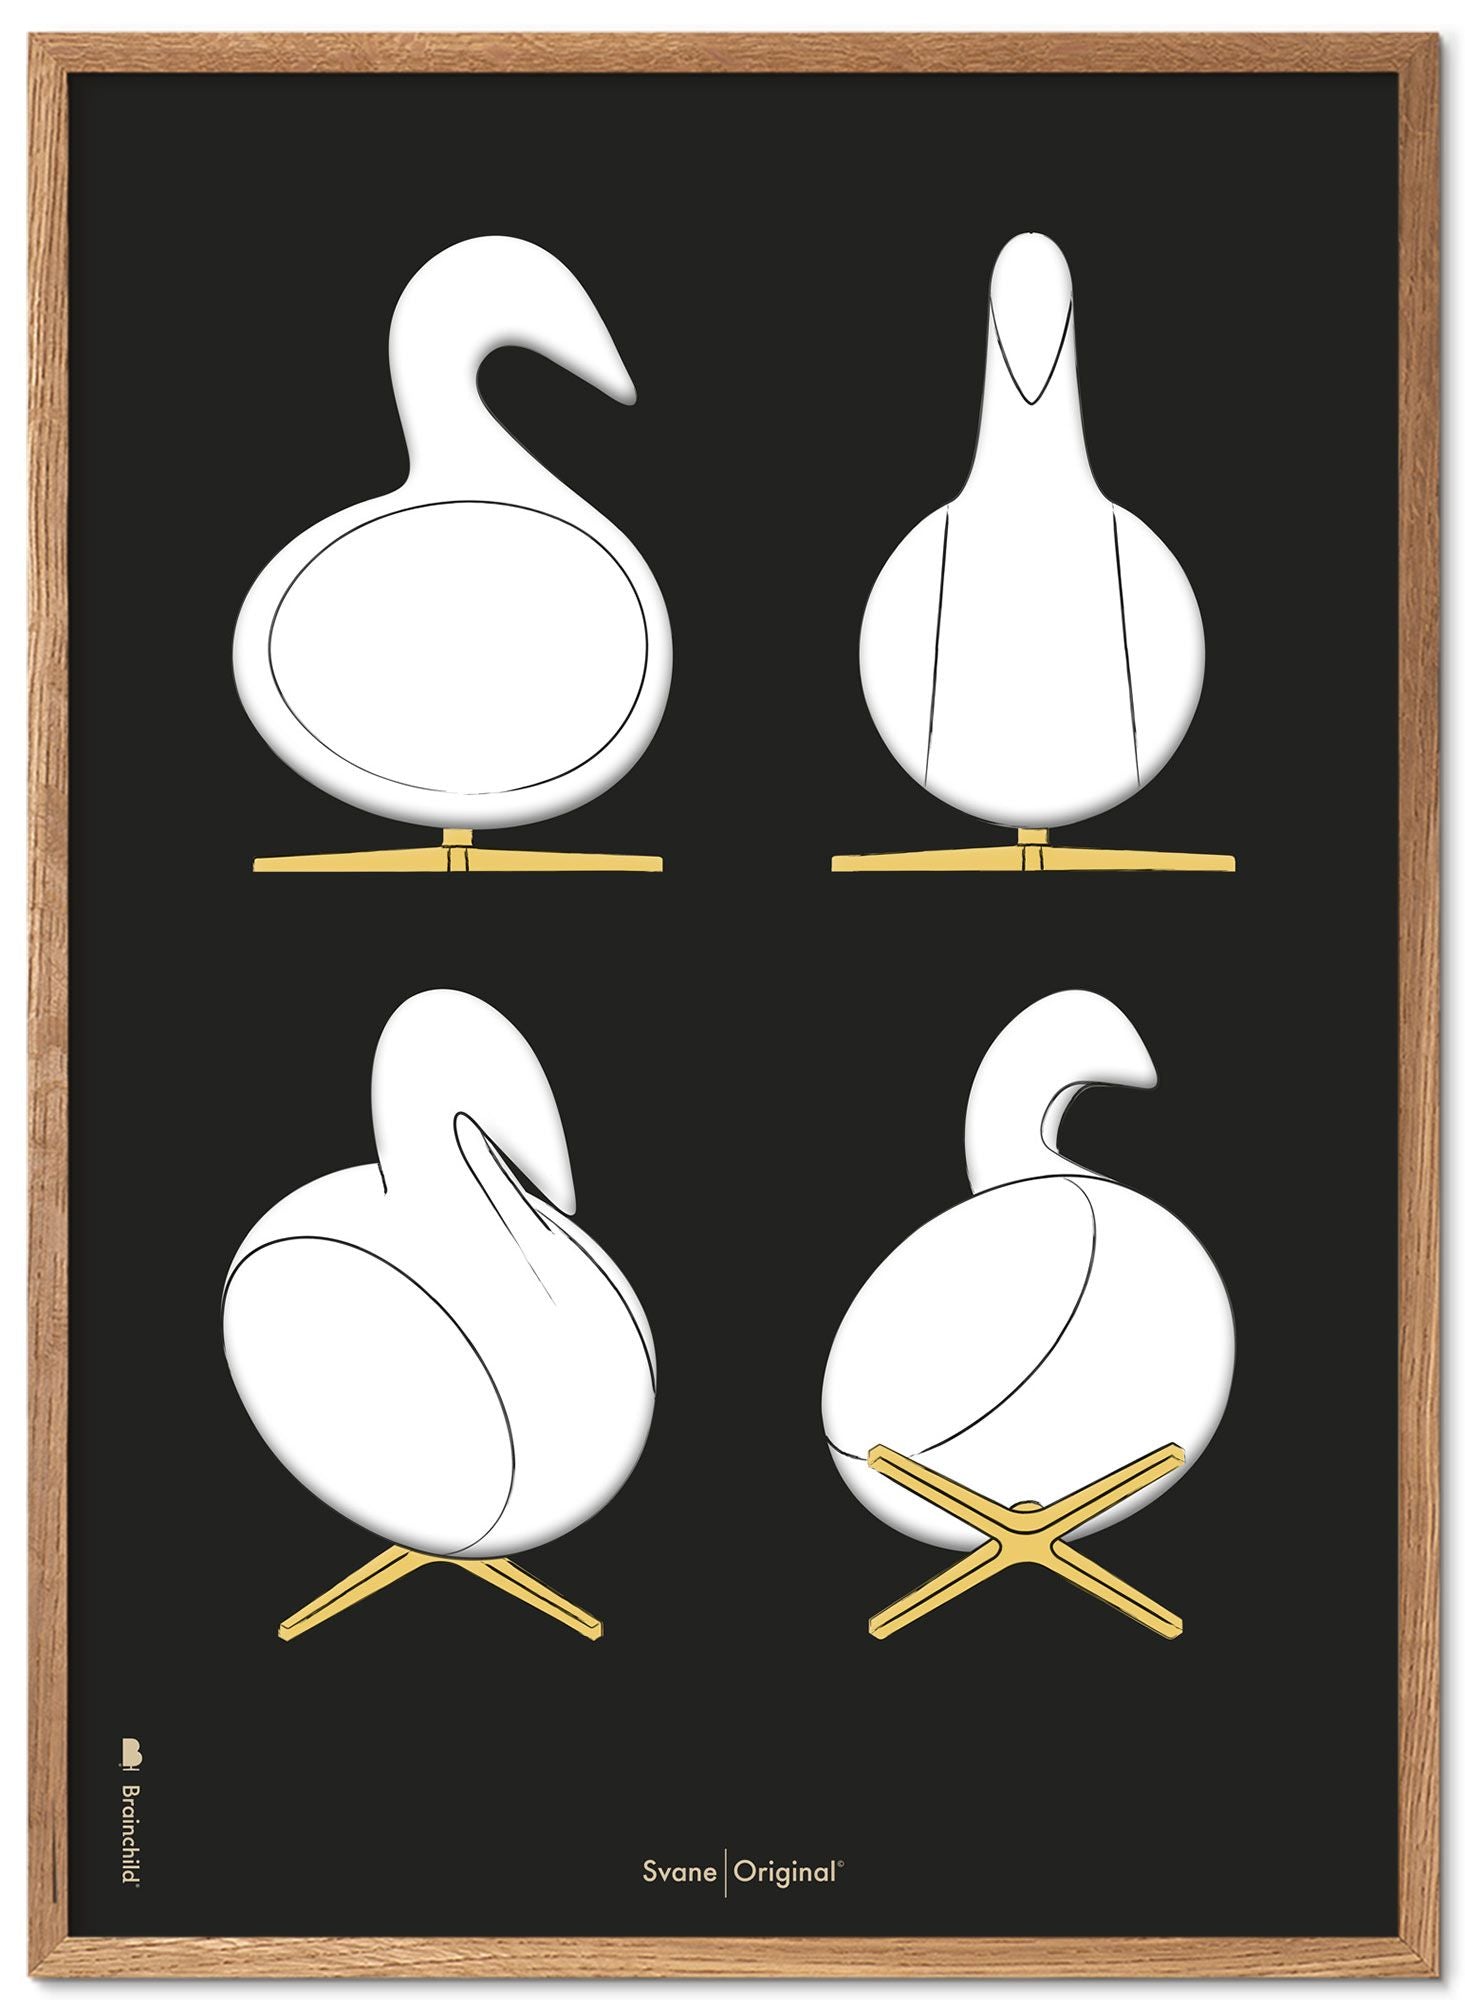 Brainchild Swan Design Sketches Poster Frame lavet af let træ 50x70 cm, sort baggrund